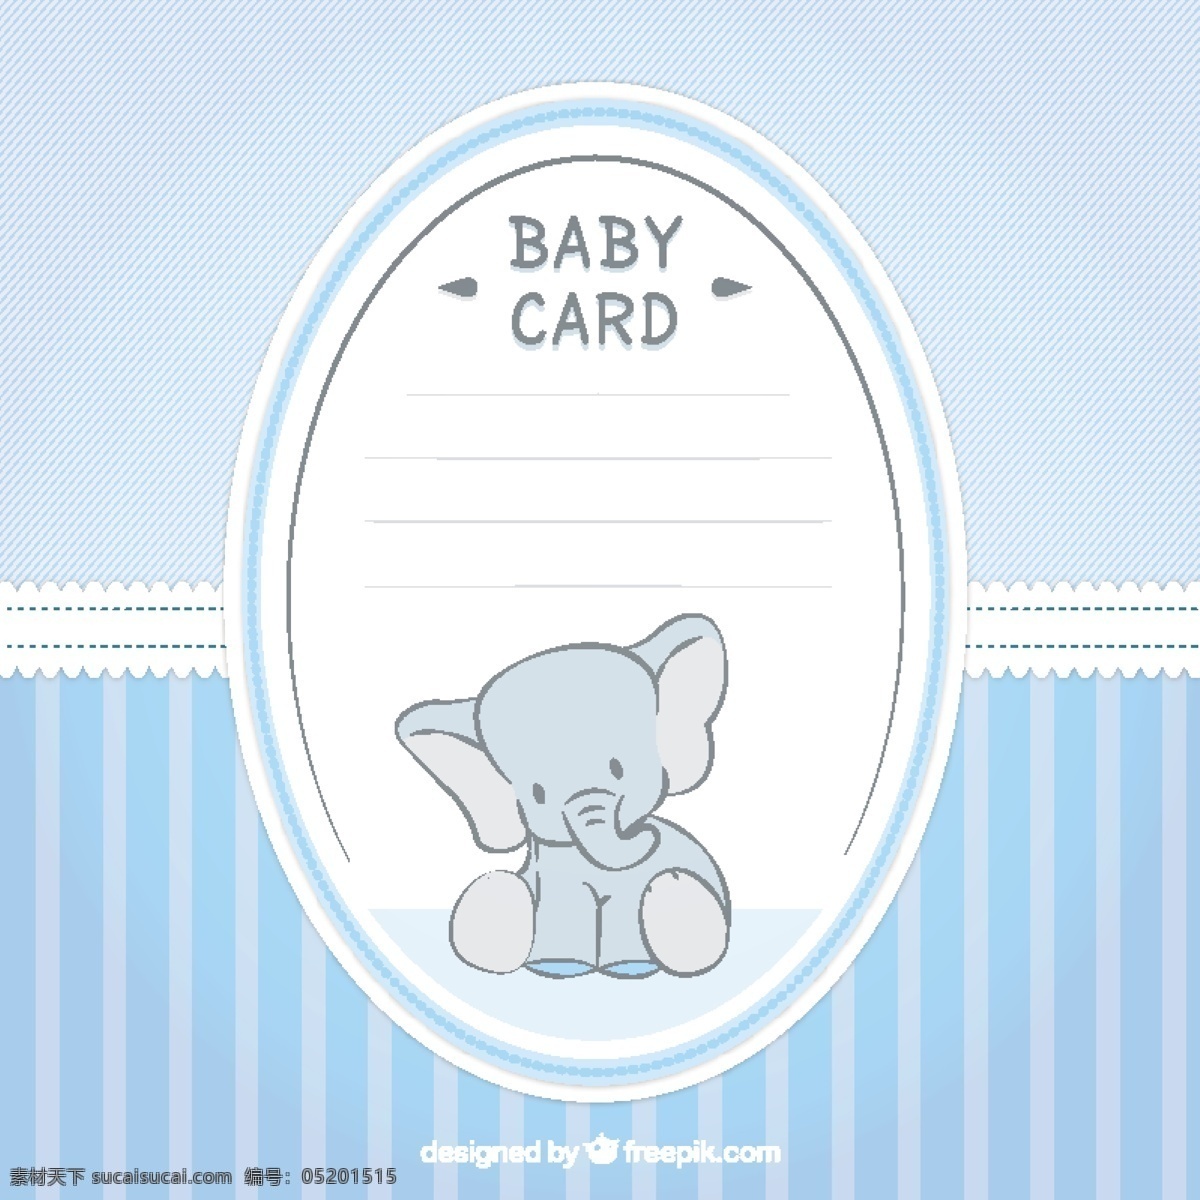 可爱 婴儿 洗澡 卡 大象 派对 邀请 卡片 婴儿淋浴 模板 蓝色 孩子 庆祝 新 男孩 邀请卡 婴儿男孩 公告 淋浴 派对邀请 婴儿卡 白色